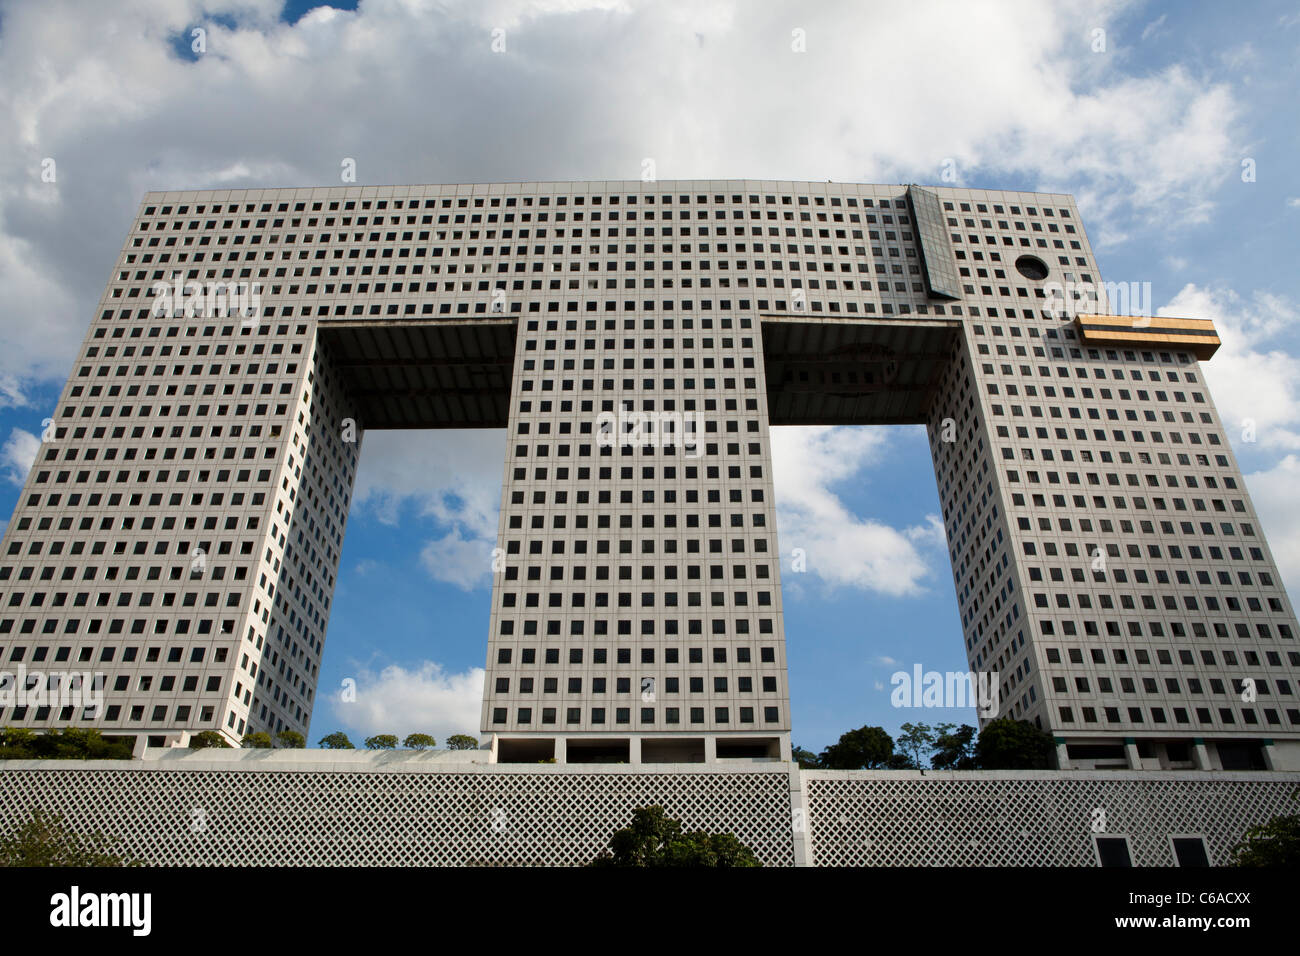 Das Elefant-Gebäude ist eines der berühmtesten Gebäude in Bangkok Dank seiner Ähnlichkeit mit einem Elefanten. Stockfoto